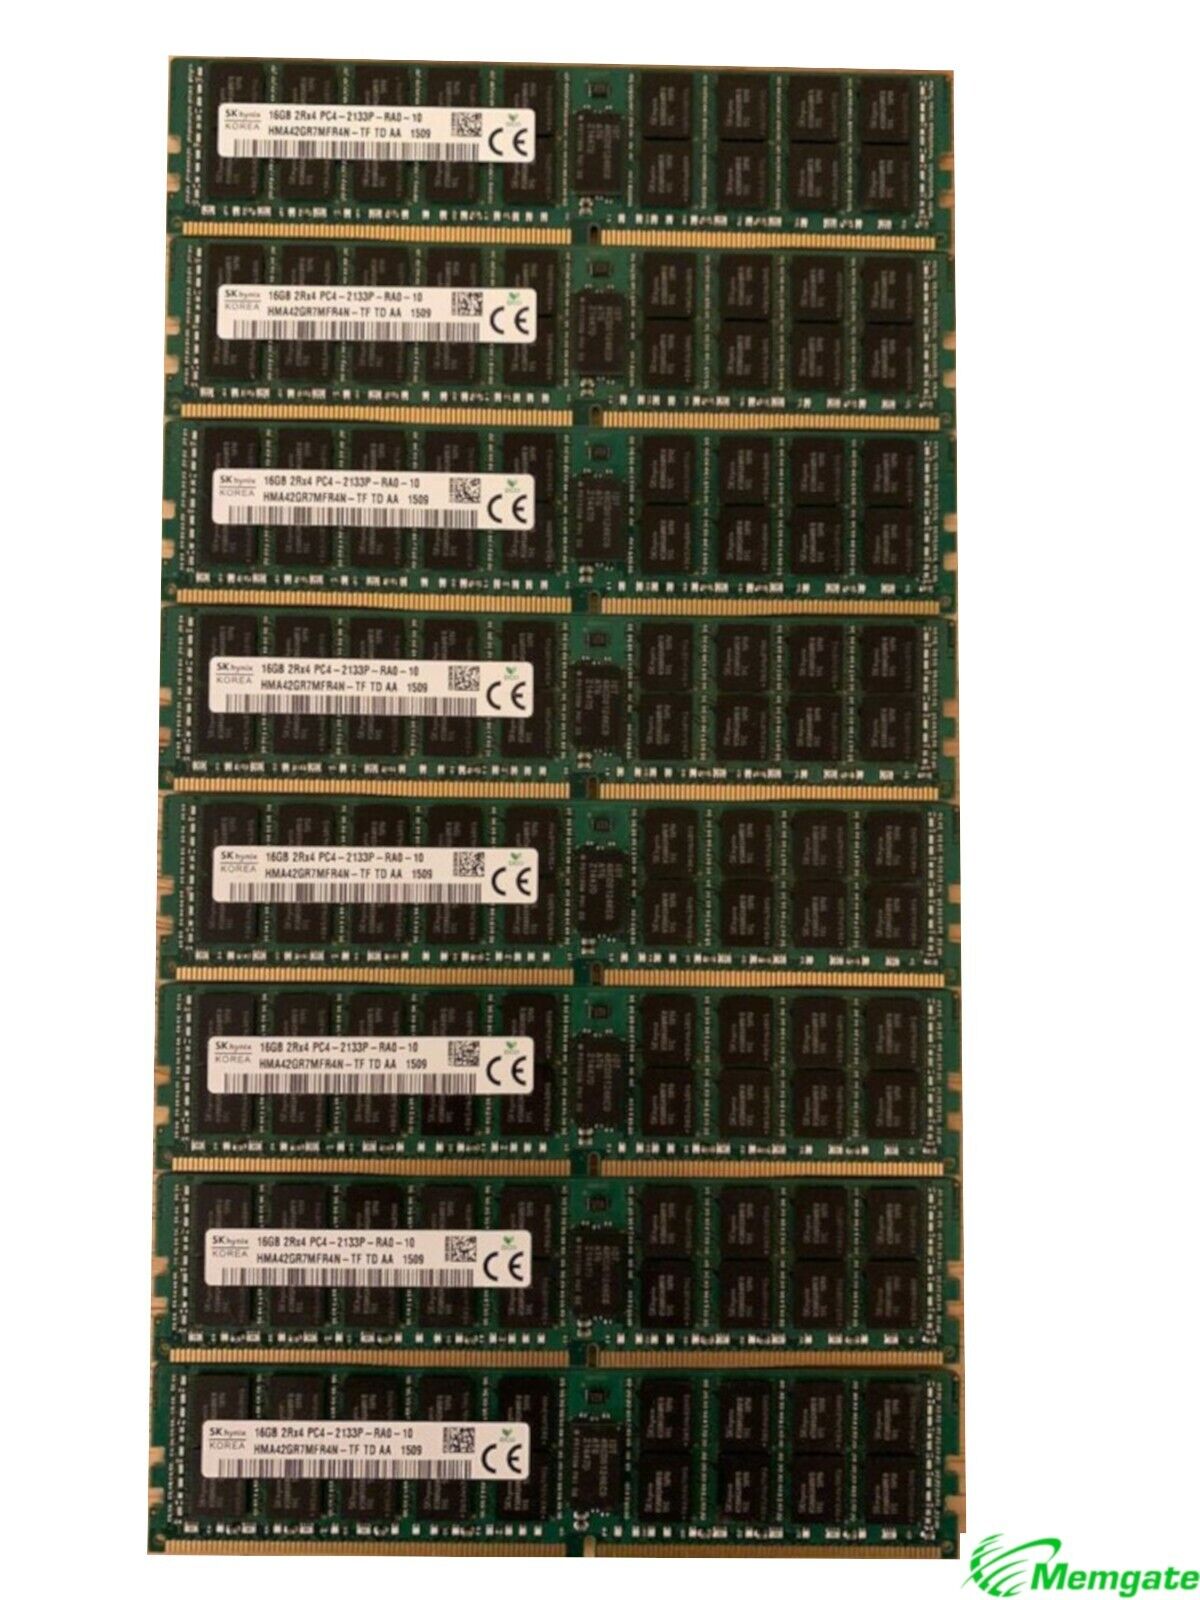 96GB (6x16GB) PC4-17000P-R DDR4 2133P ECC RDIMM Memory for HP DL360 G9